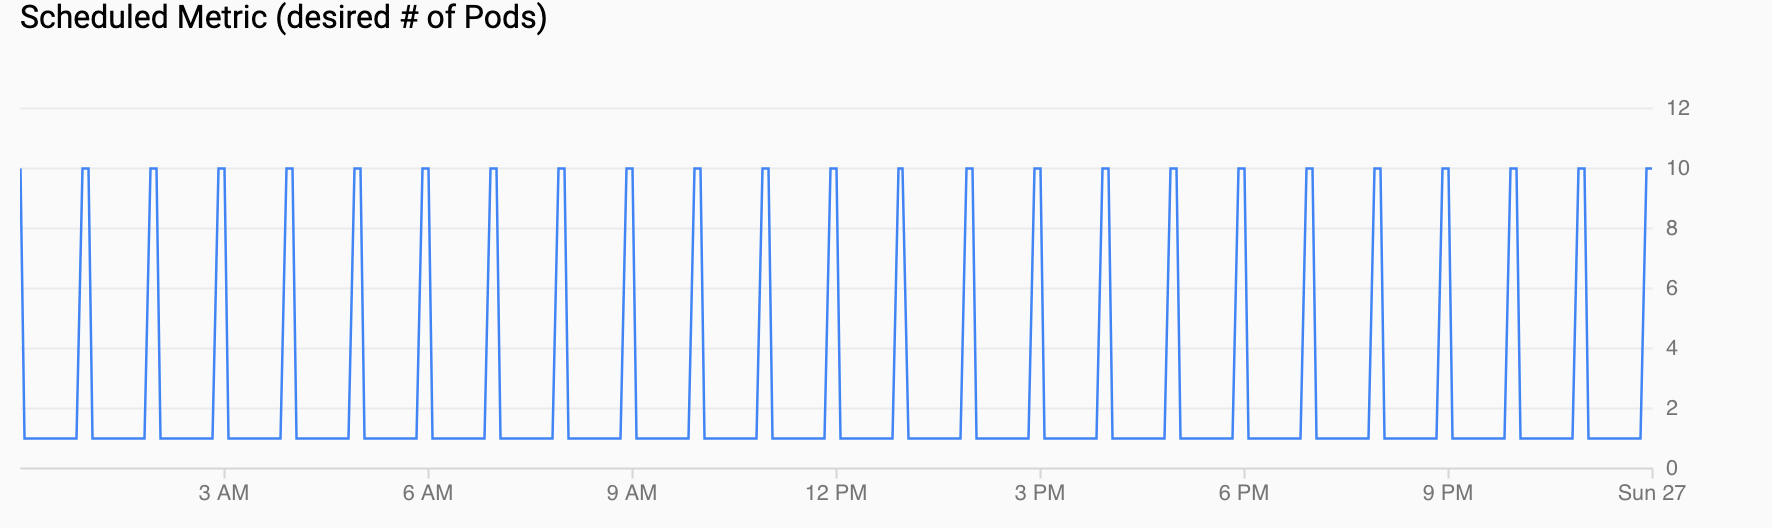 Gráfico de la demanda de Pods, que muestra un aumento cada hora.